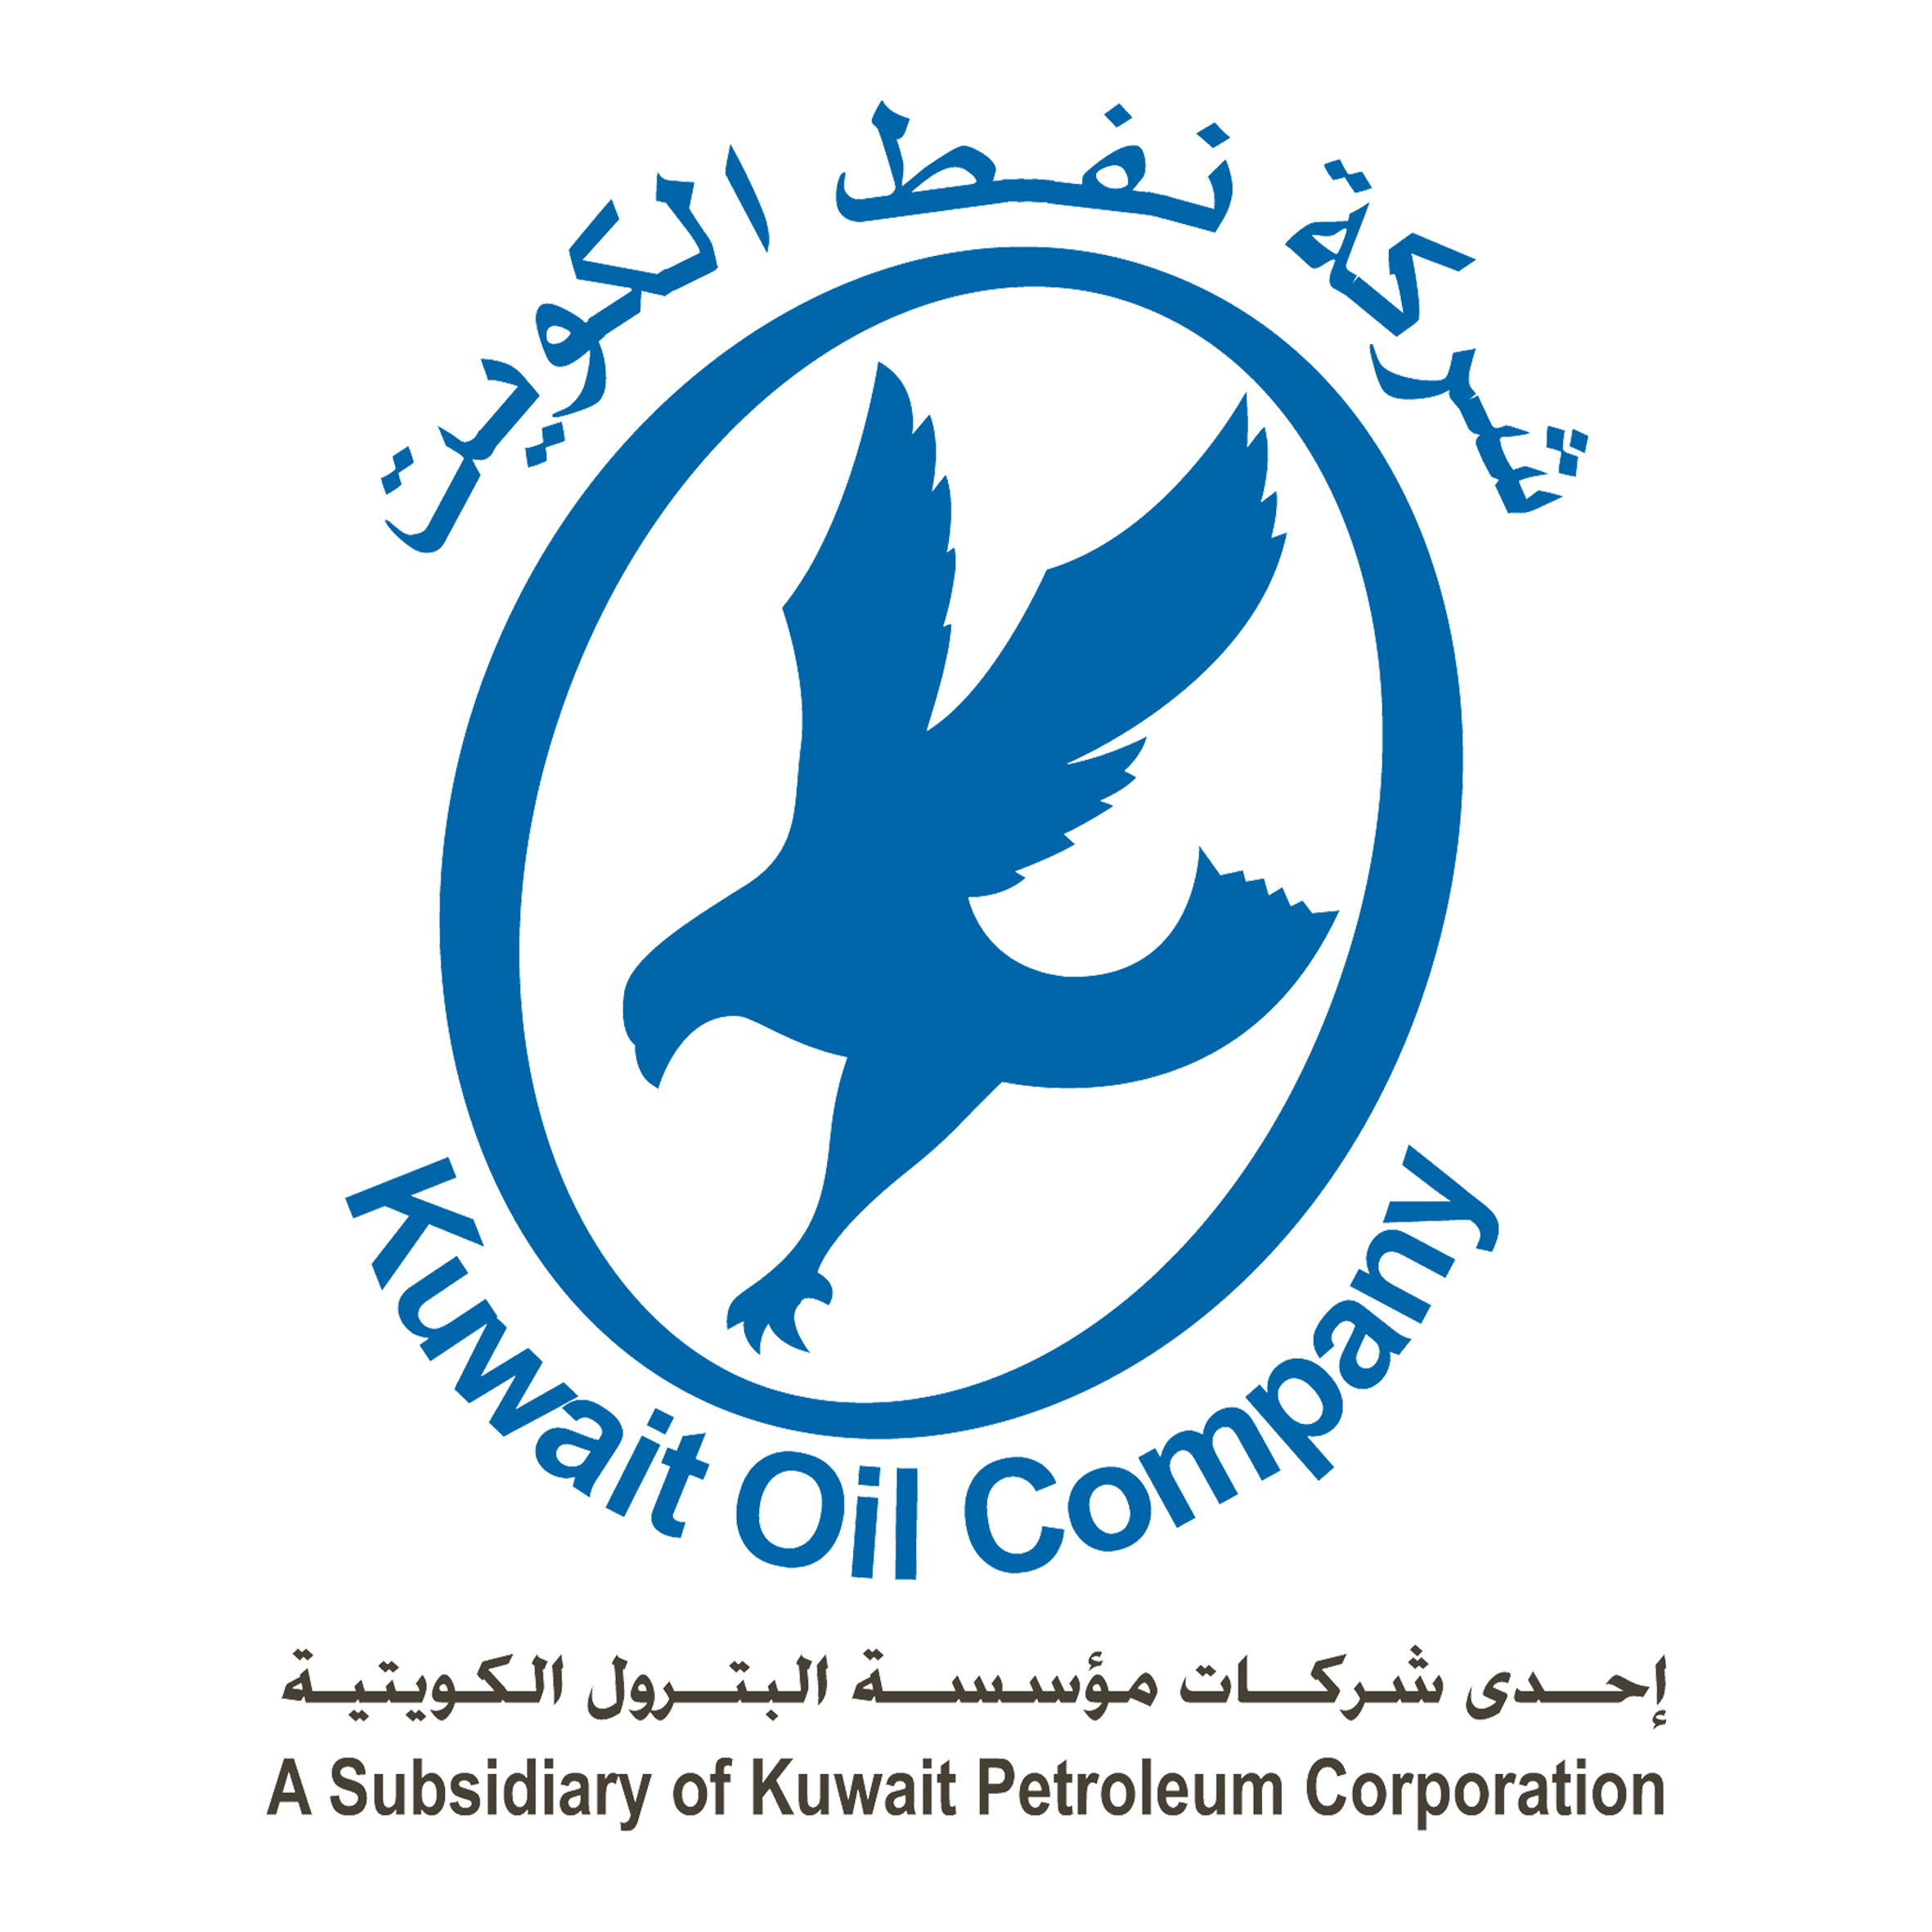 KUWAIT-OIL-COMPANY